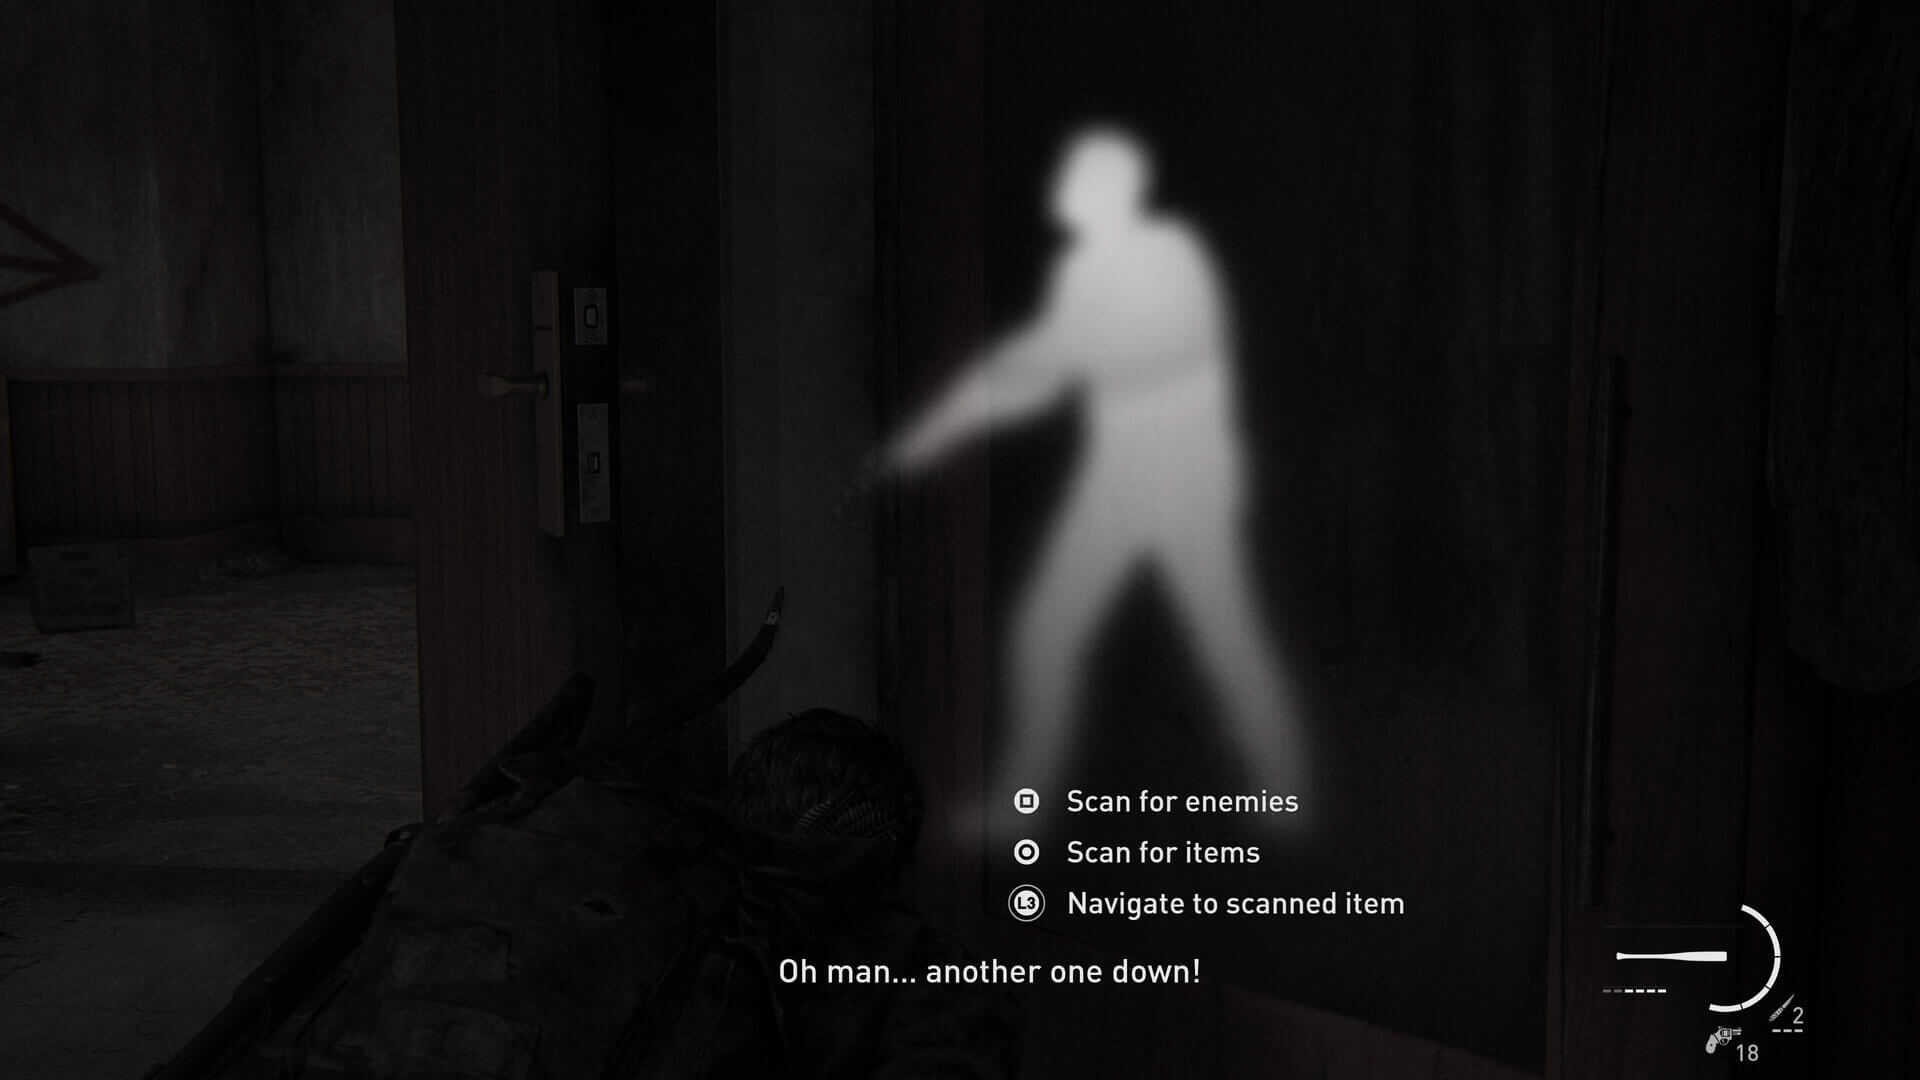 Análise: The Last of Us Part I (PS5) é a versão definitiva de um clássico  moderno - GameBlast